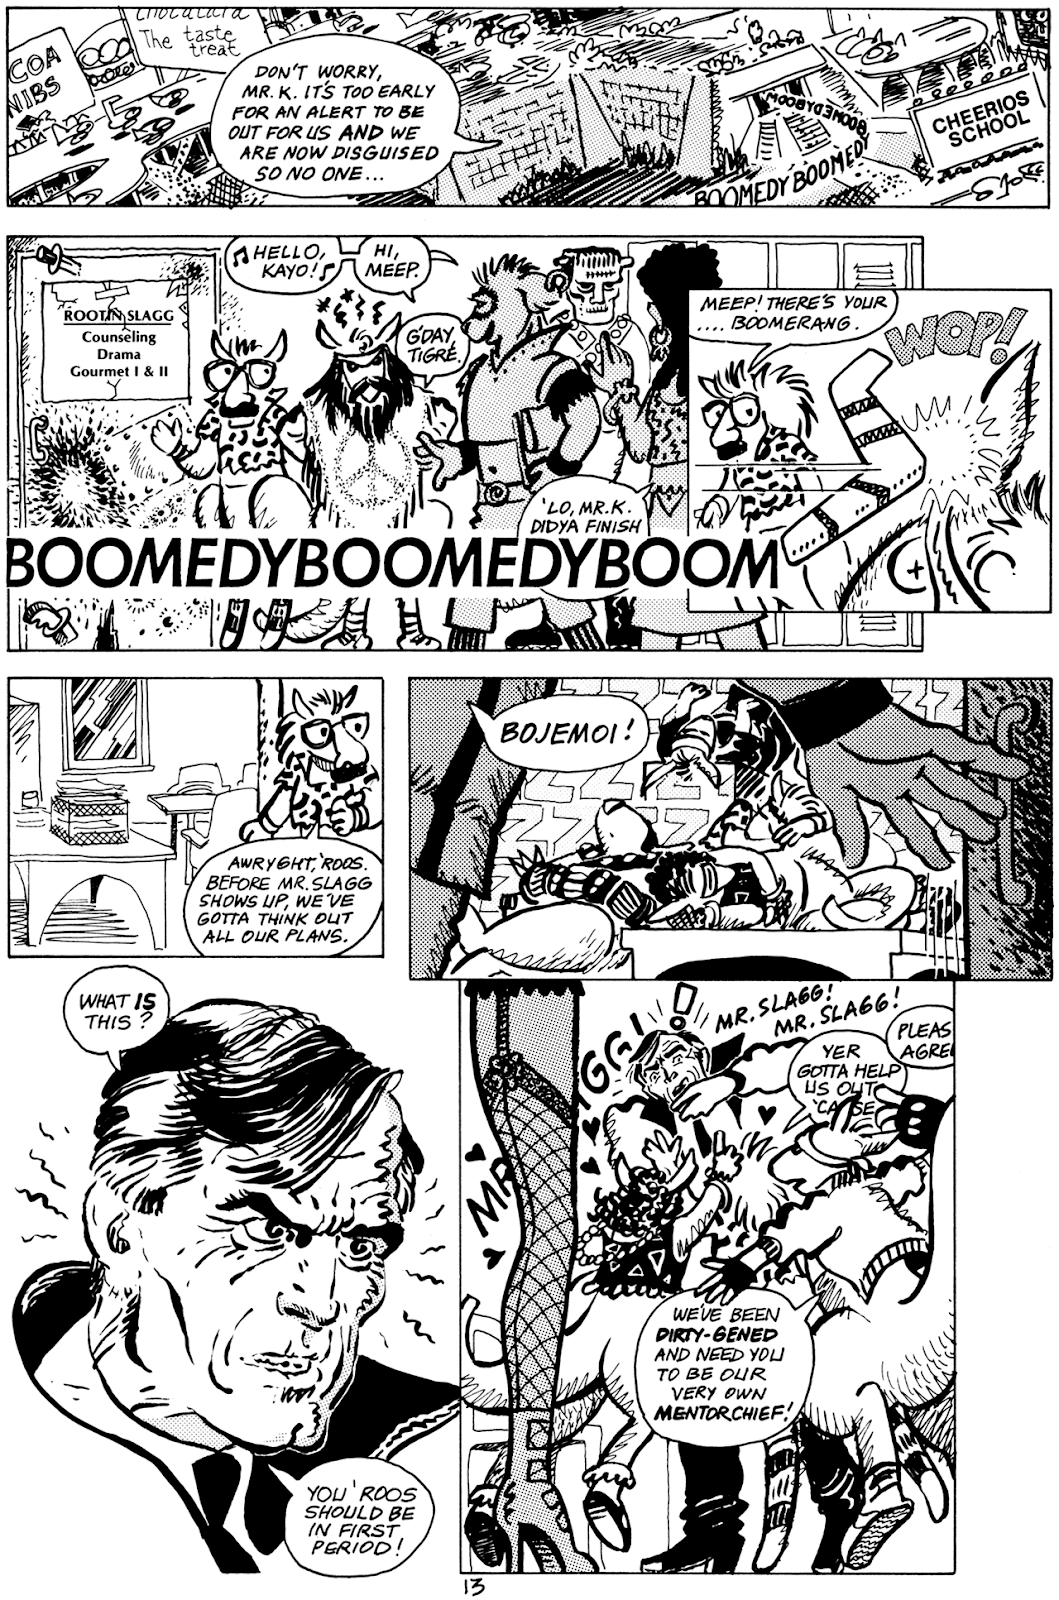 Pre-Teen Dirty-Gene Kung-Fu Kangaroos issue 1 - Page 15